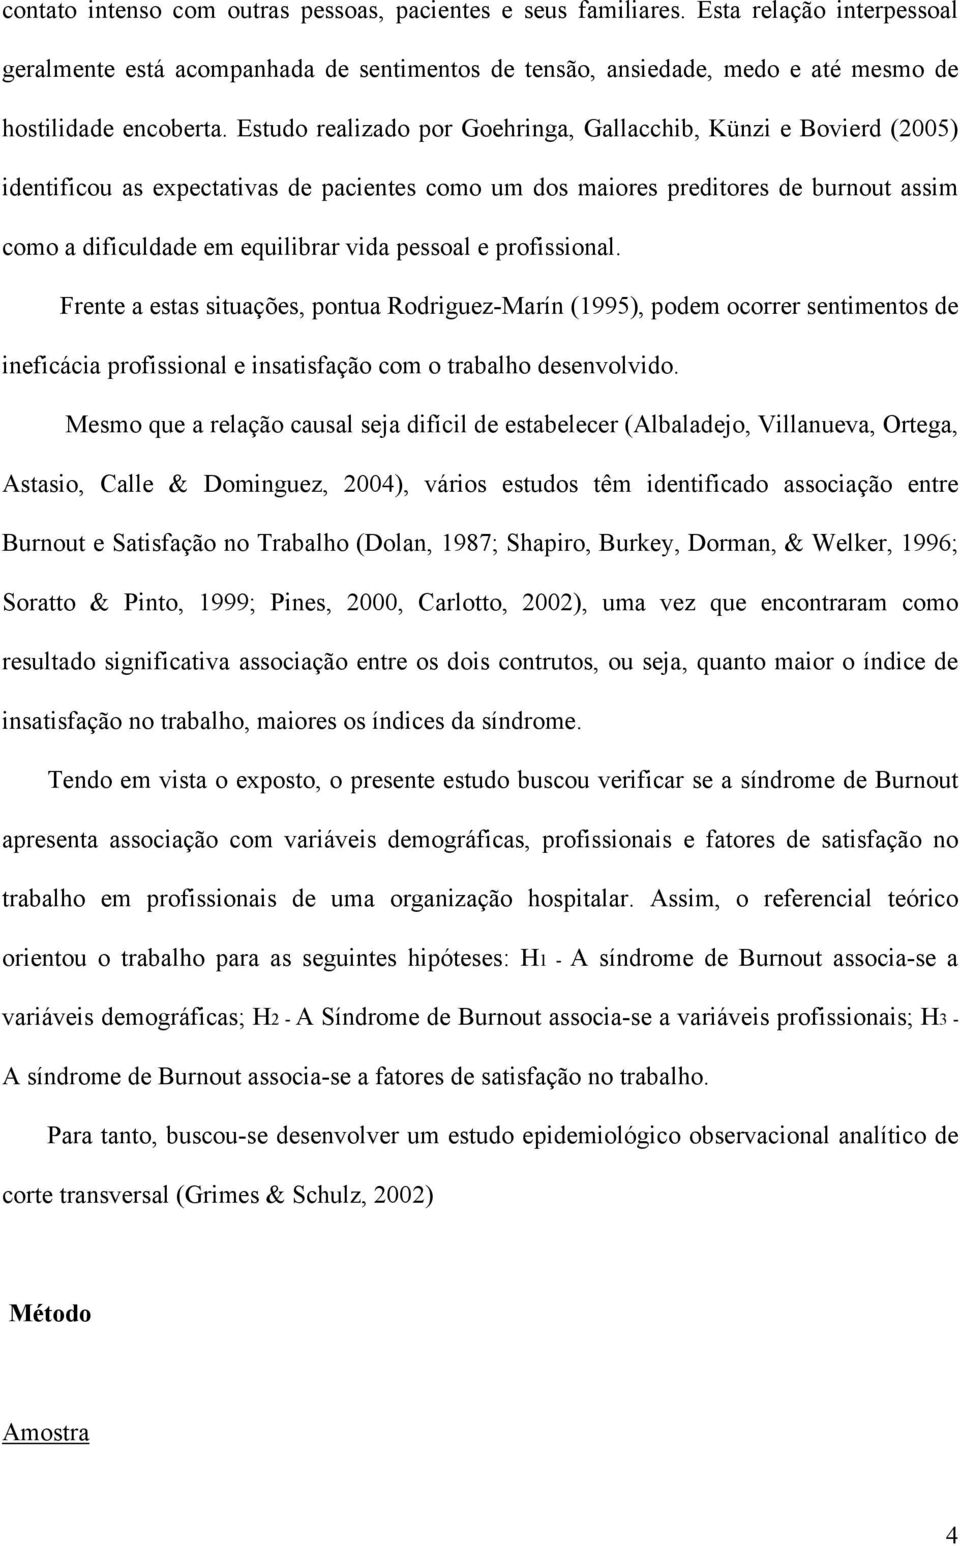 pessoal e profissional. Frente a estas situações, pontua Rodriguez-Marín (1995), podem ocorrer sentimentos de ineficácia profissional e insatisfação com o trabalho desenvolvido.